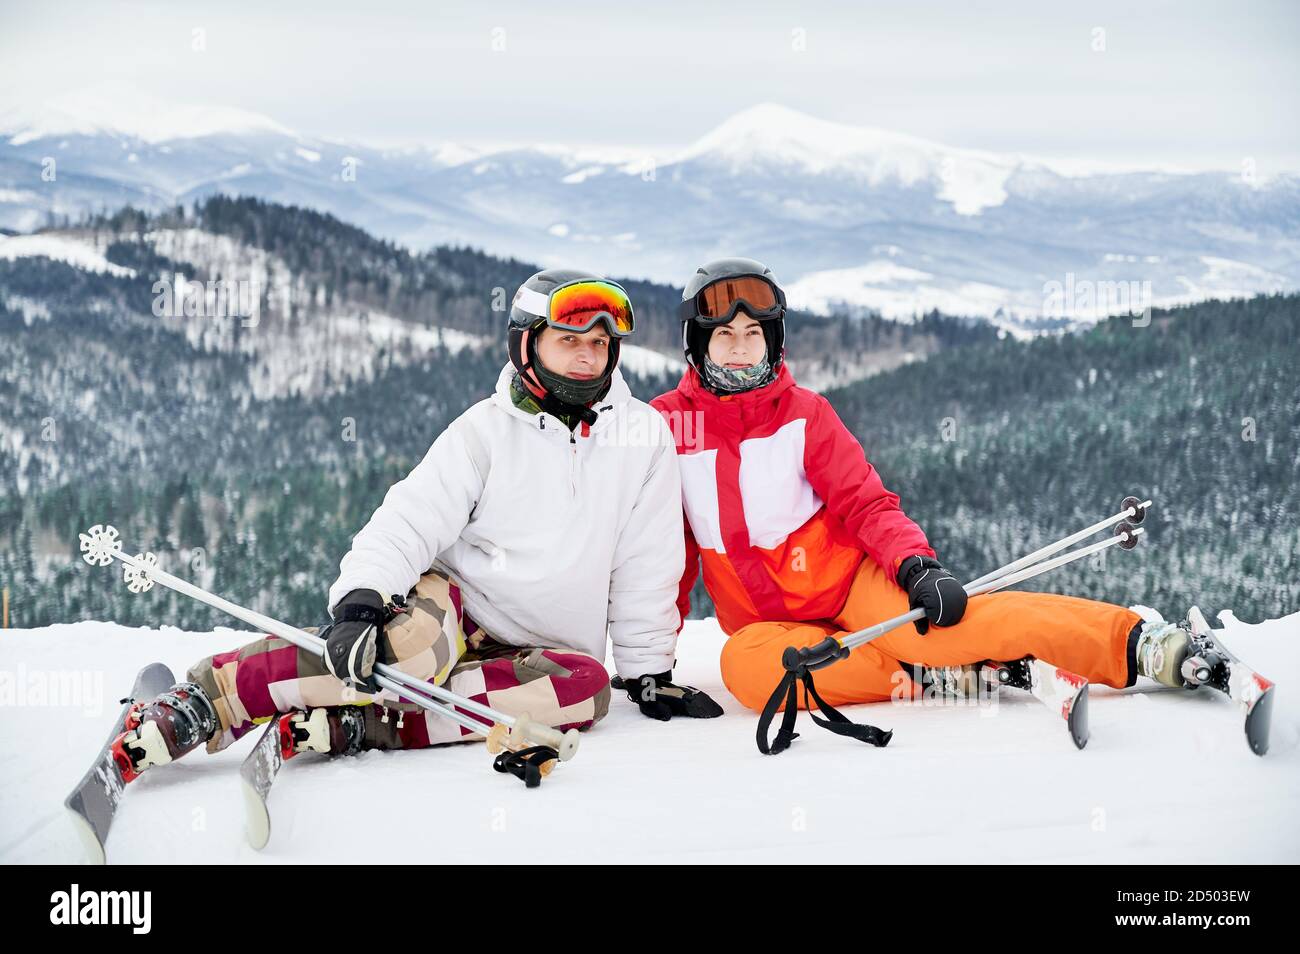 Due amici che indossano abiti da sci e attrezzature da sci si trovano in montagna d'inverno godendo di tempo innevato, sci e paesaggi incredibili. Ritratto di una coppia seduta su una collina innevata che sorride guardando la macchina fotografica Foto Stock